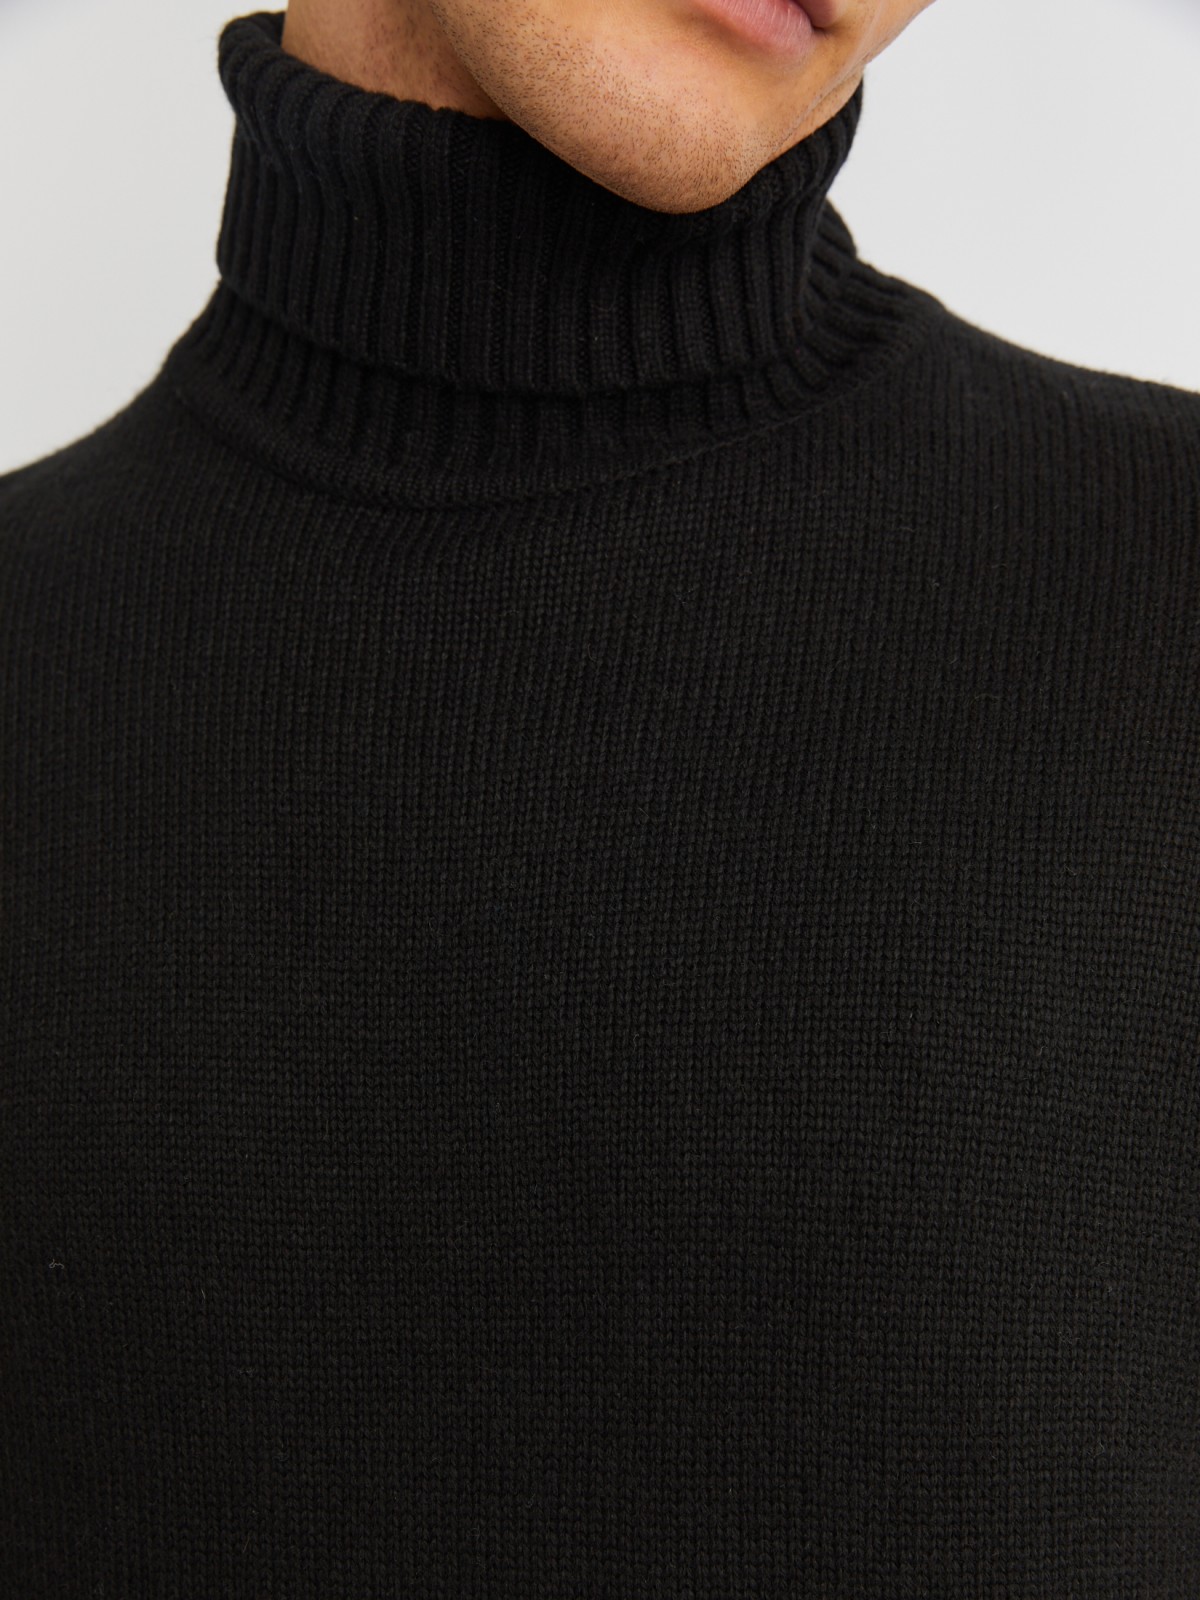 Вязаная шерстяная водолазка-свитер с горлом zolla 013436163072, цвет черный, размер M - фото 5